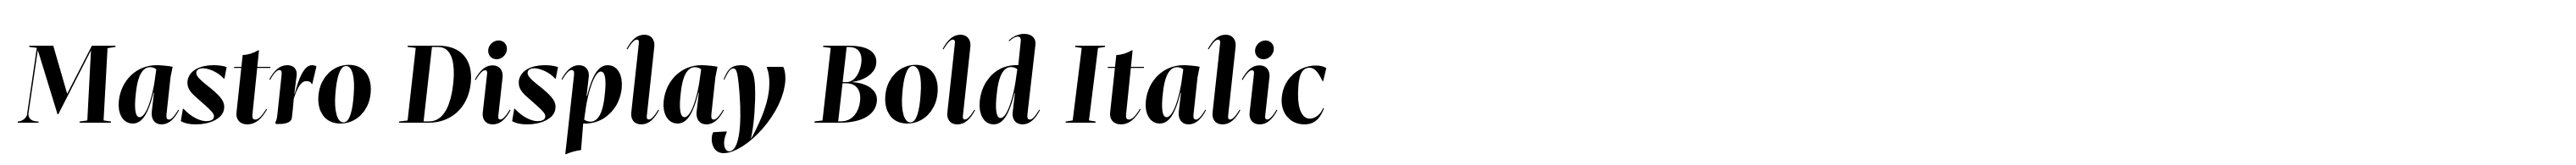 Mastro Display Bold Italic